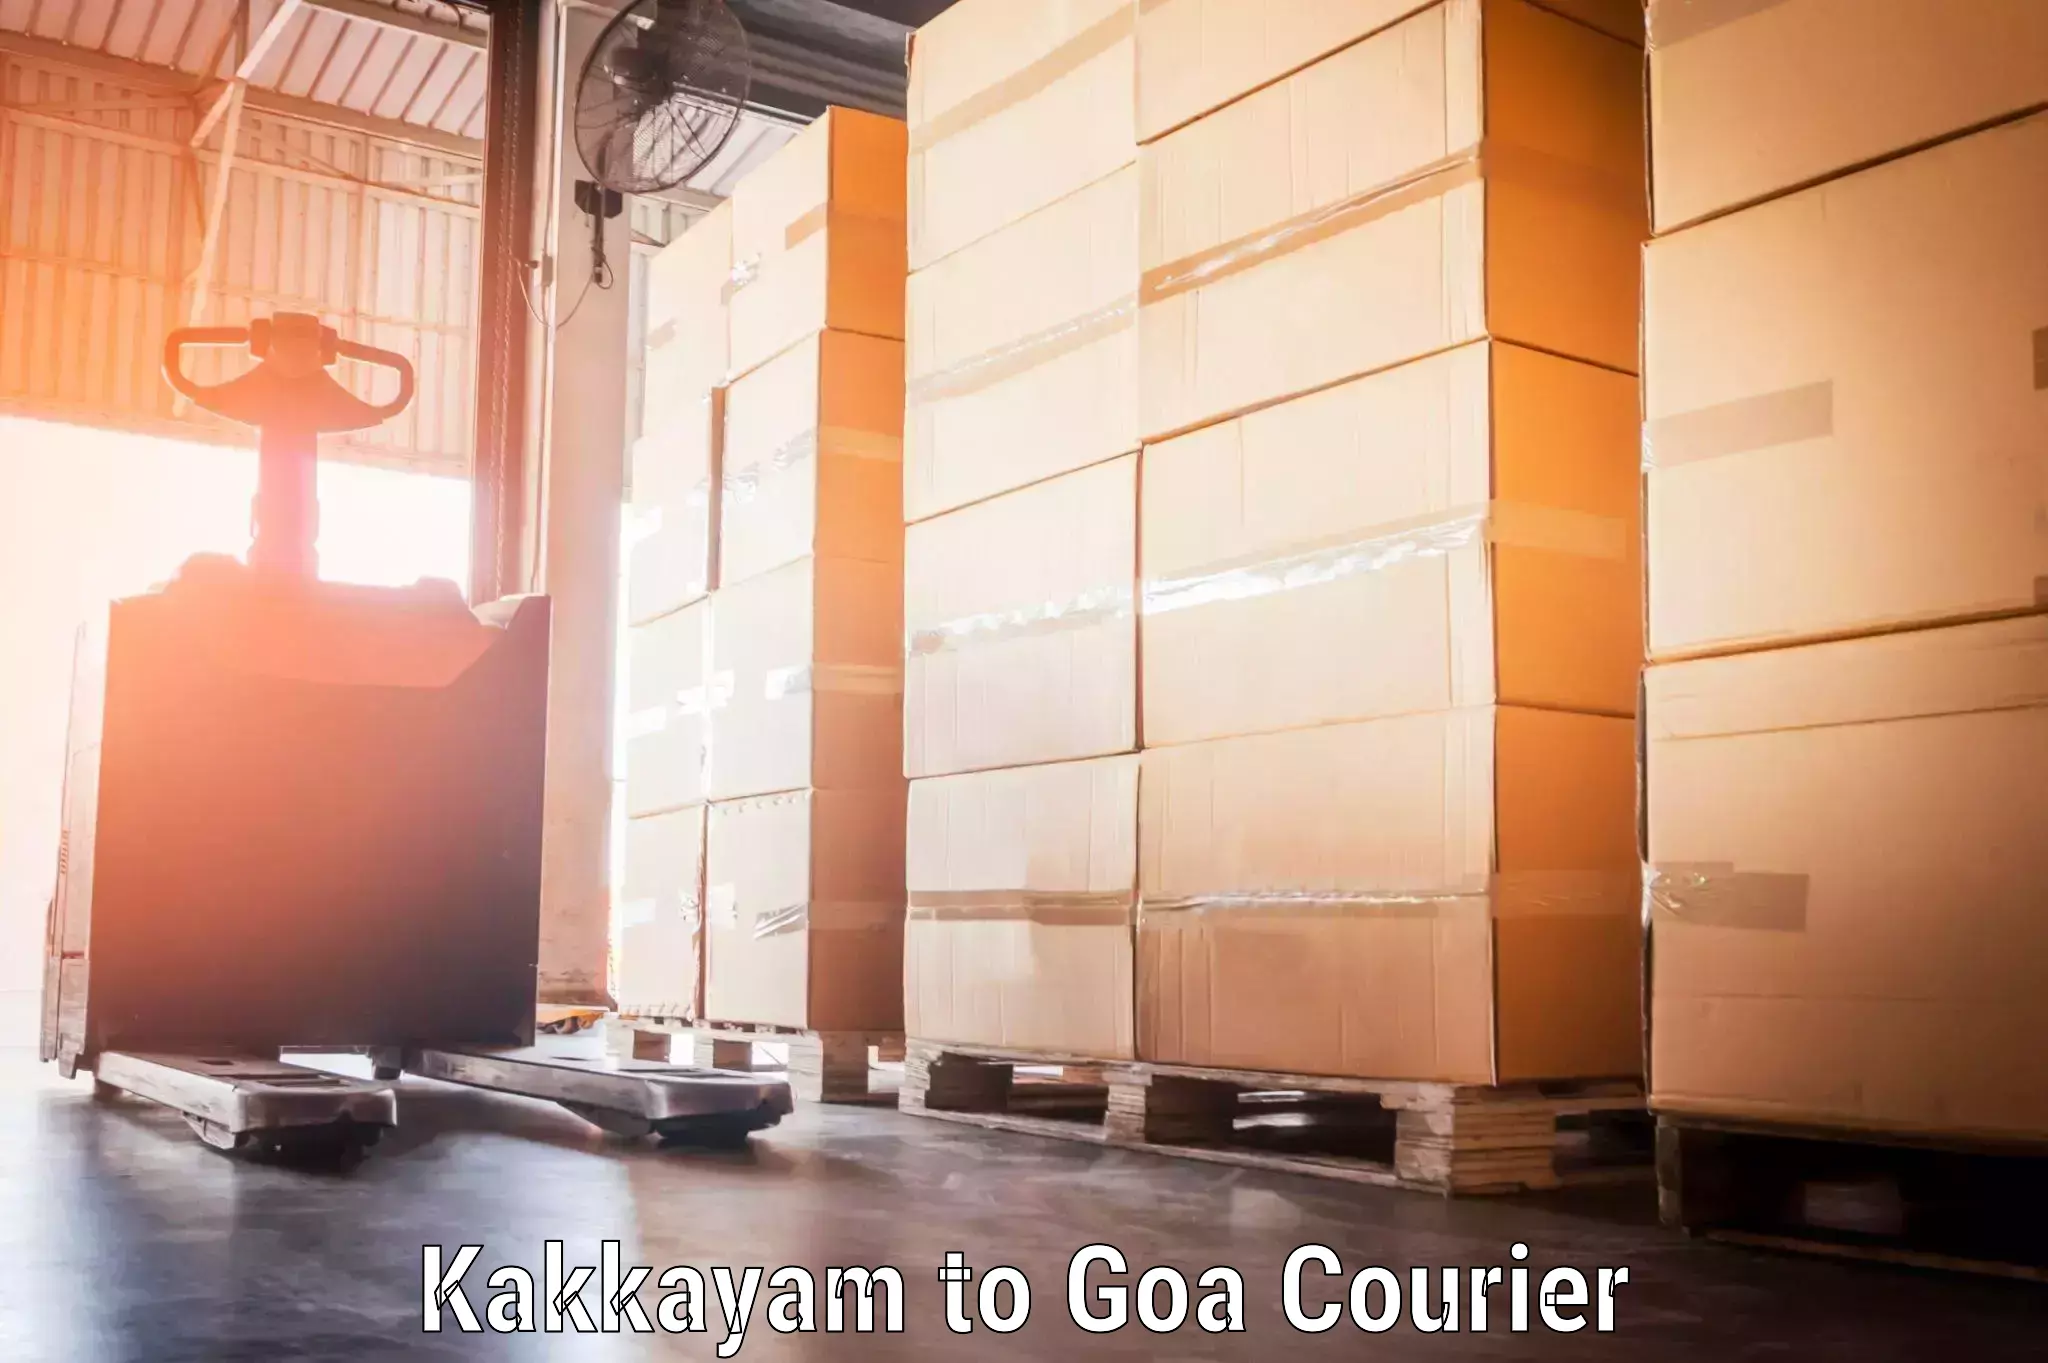 Baggage delivery management Kakkayam to Goa University